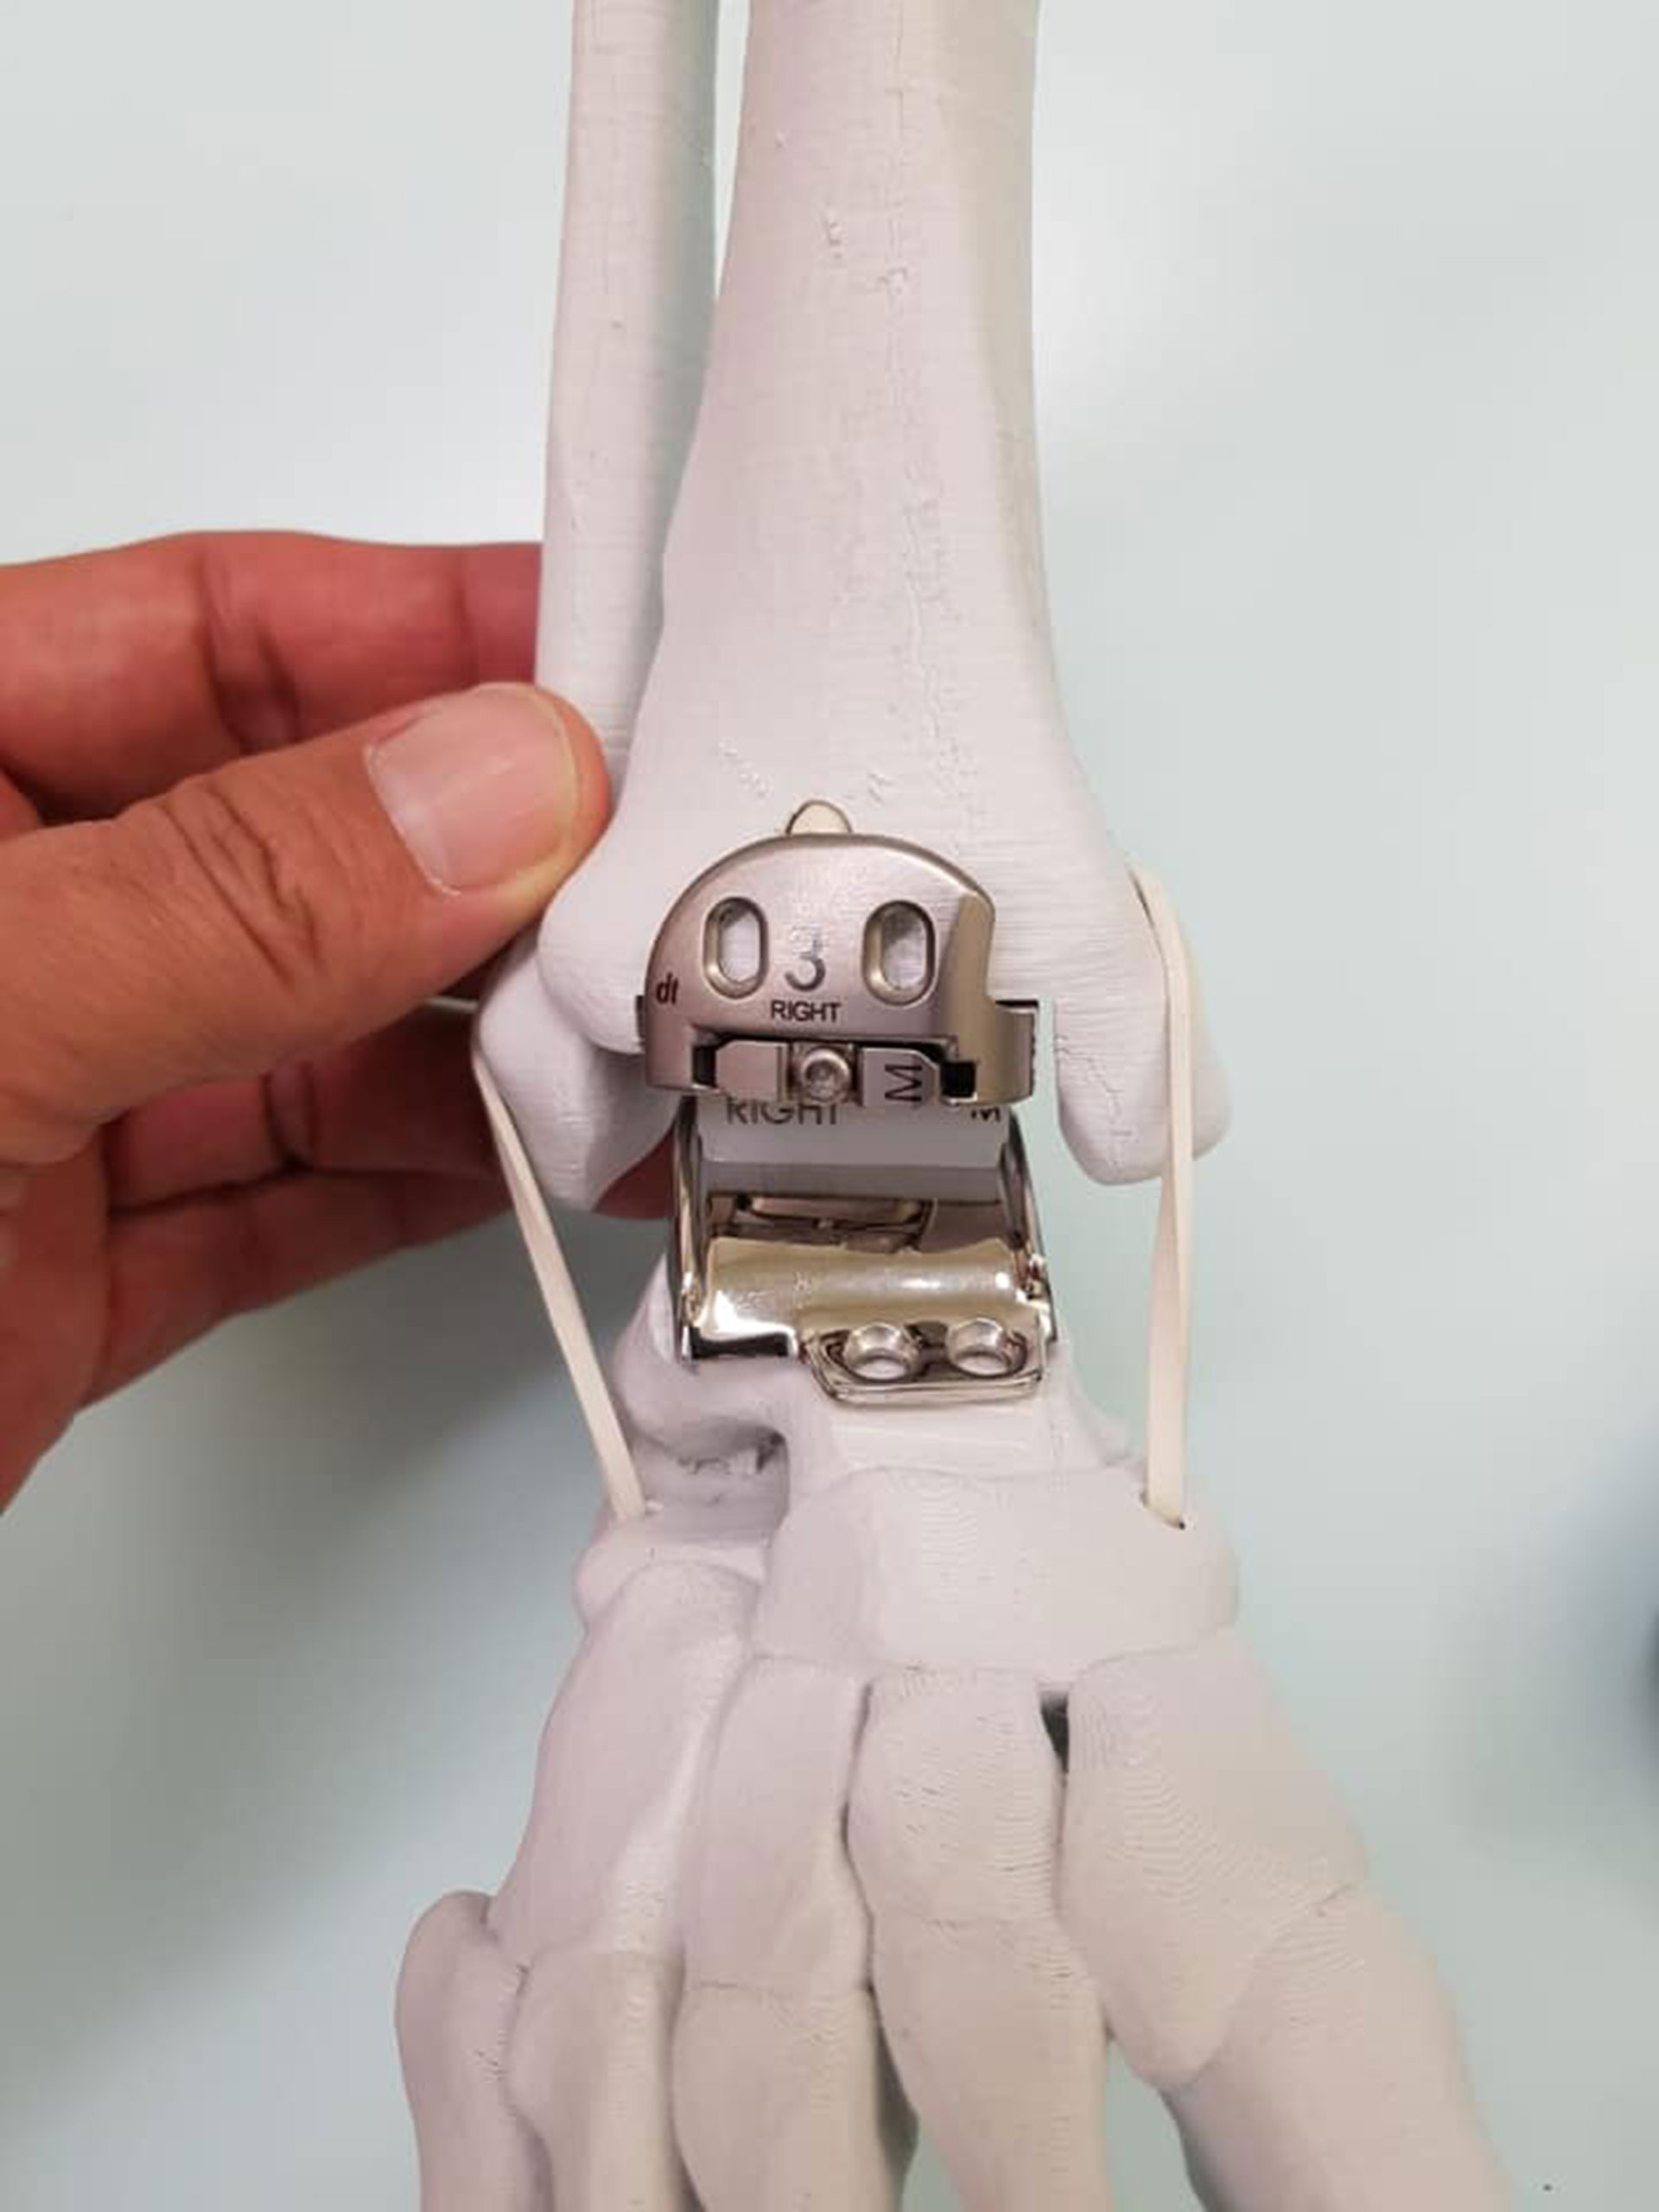 Questa è la protesi che ha sostituito la caviglia sinistra di Batistuta (Facebook Gabriel Batistuta)